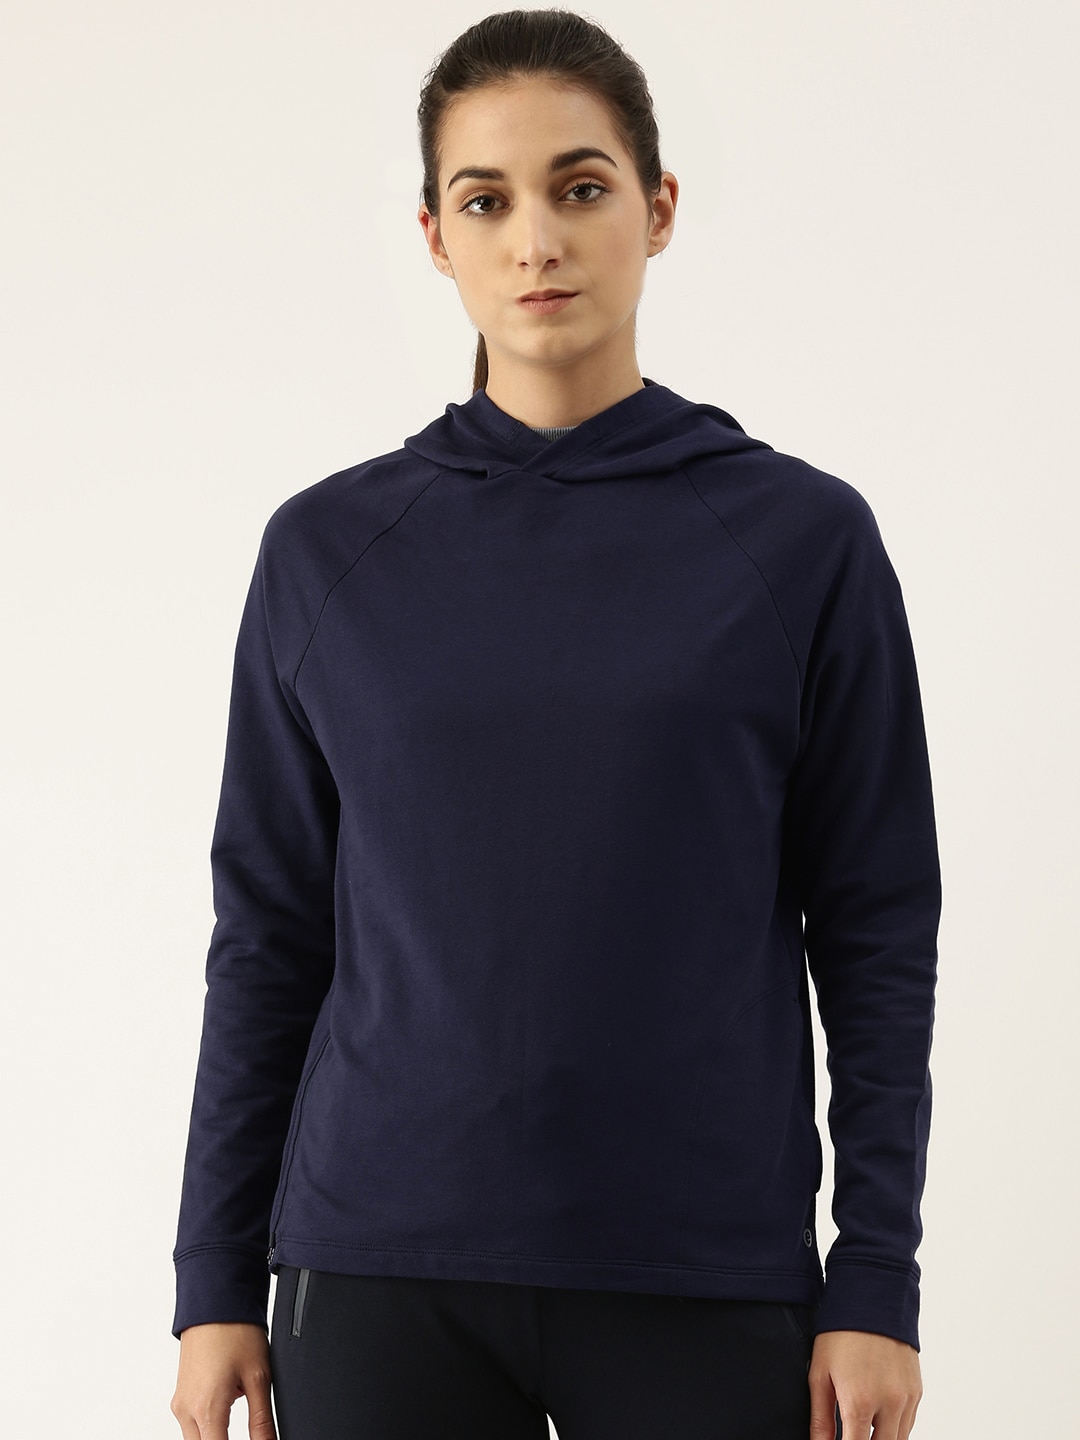 Enamor Women Navy Blue Hooded Sweatshirt Price in India